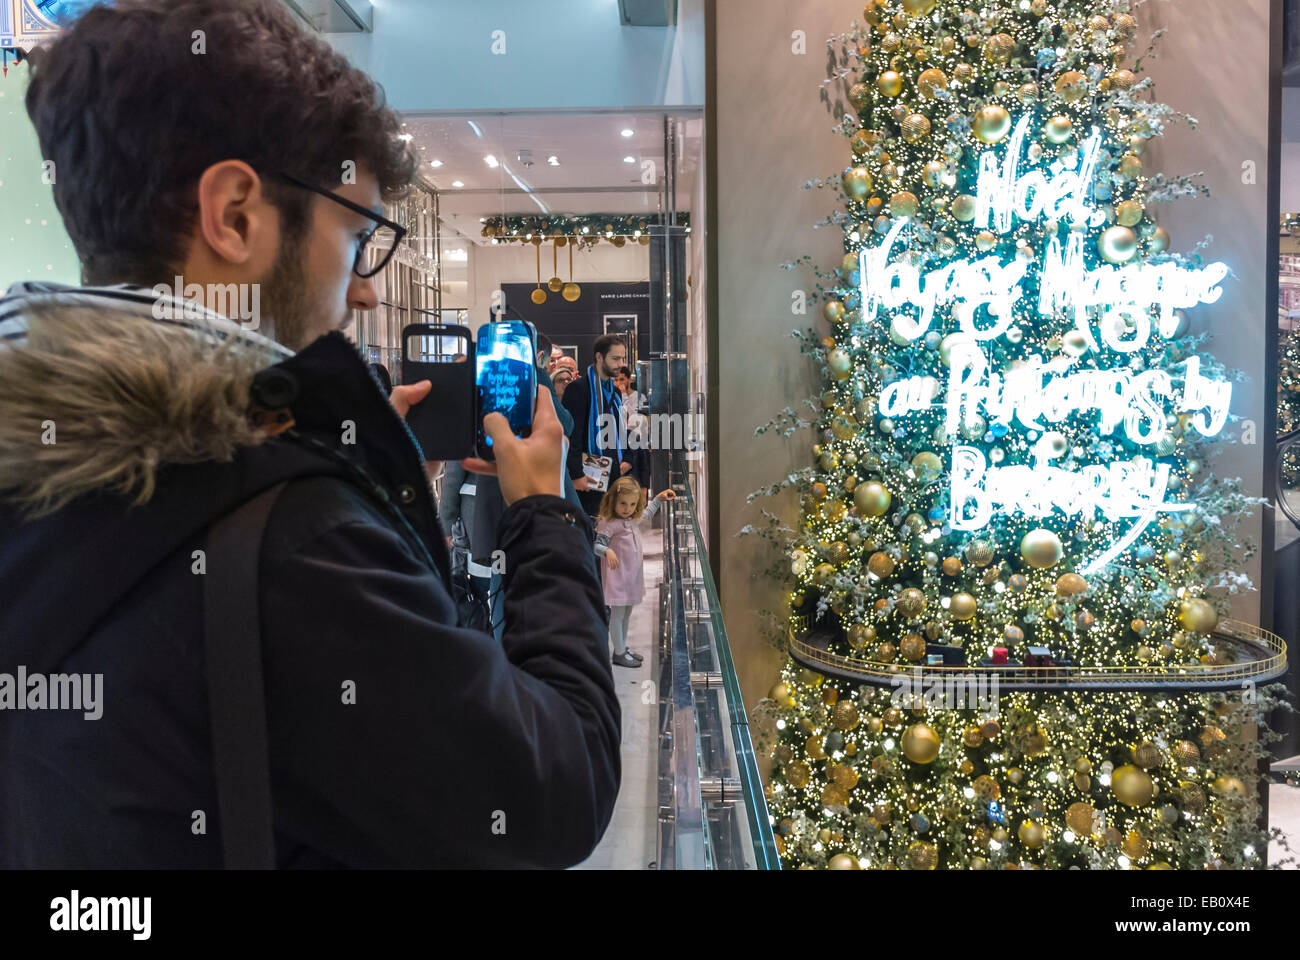 Parigi, Francia, all'interno del dipartimento francese Store, Le Printemps, godendo le luci di Natale, decorazioni, uomo di scattare le foto con Smart Phone, Display led di illuminazione Foto Stock